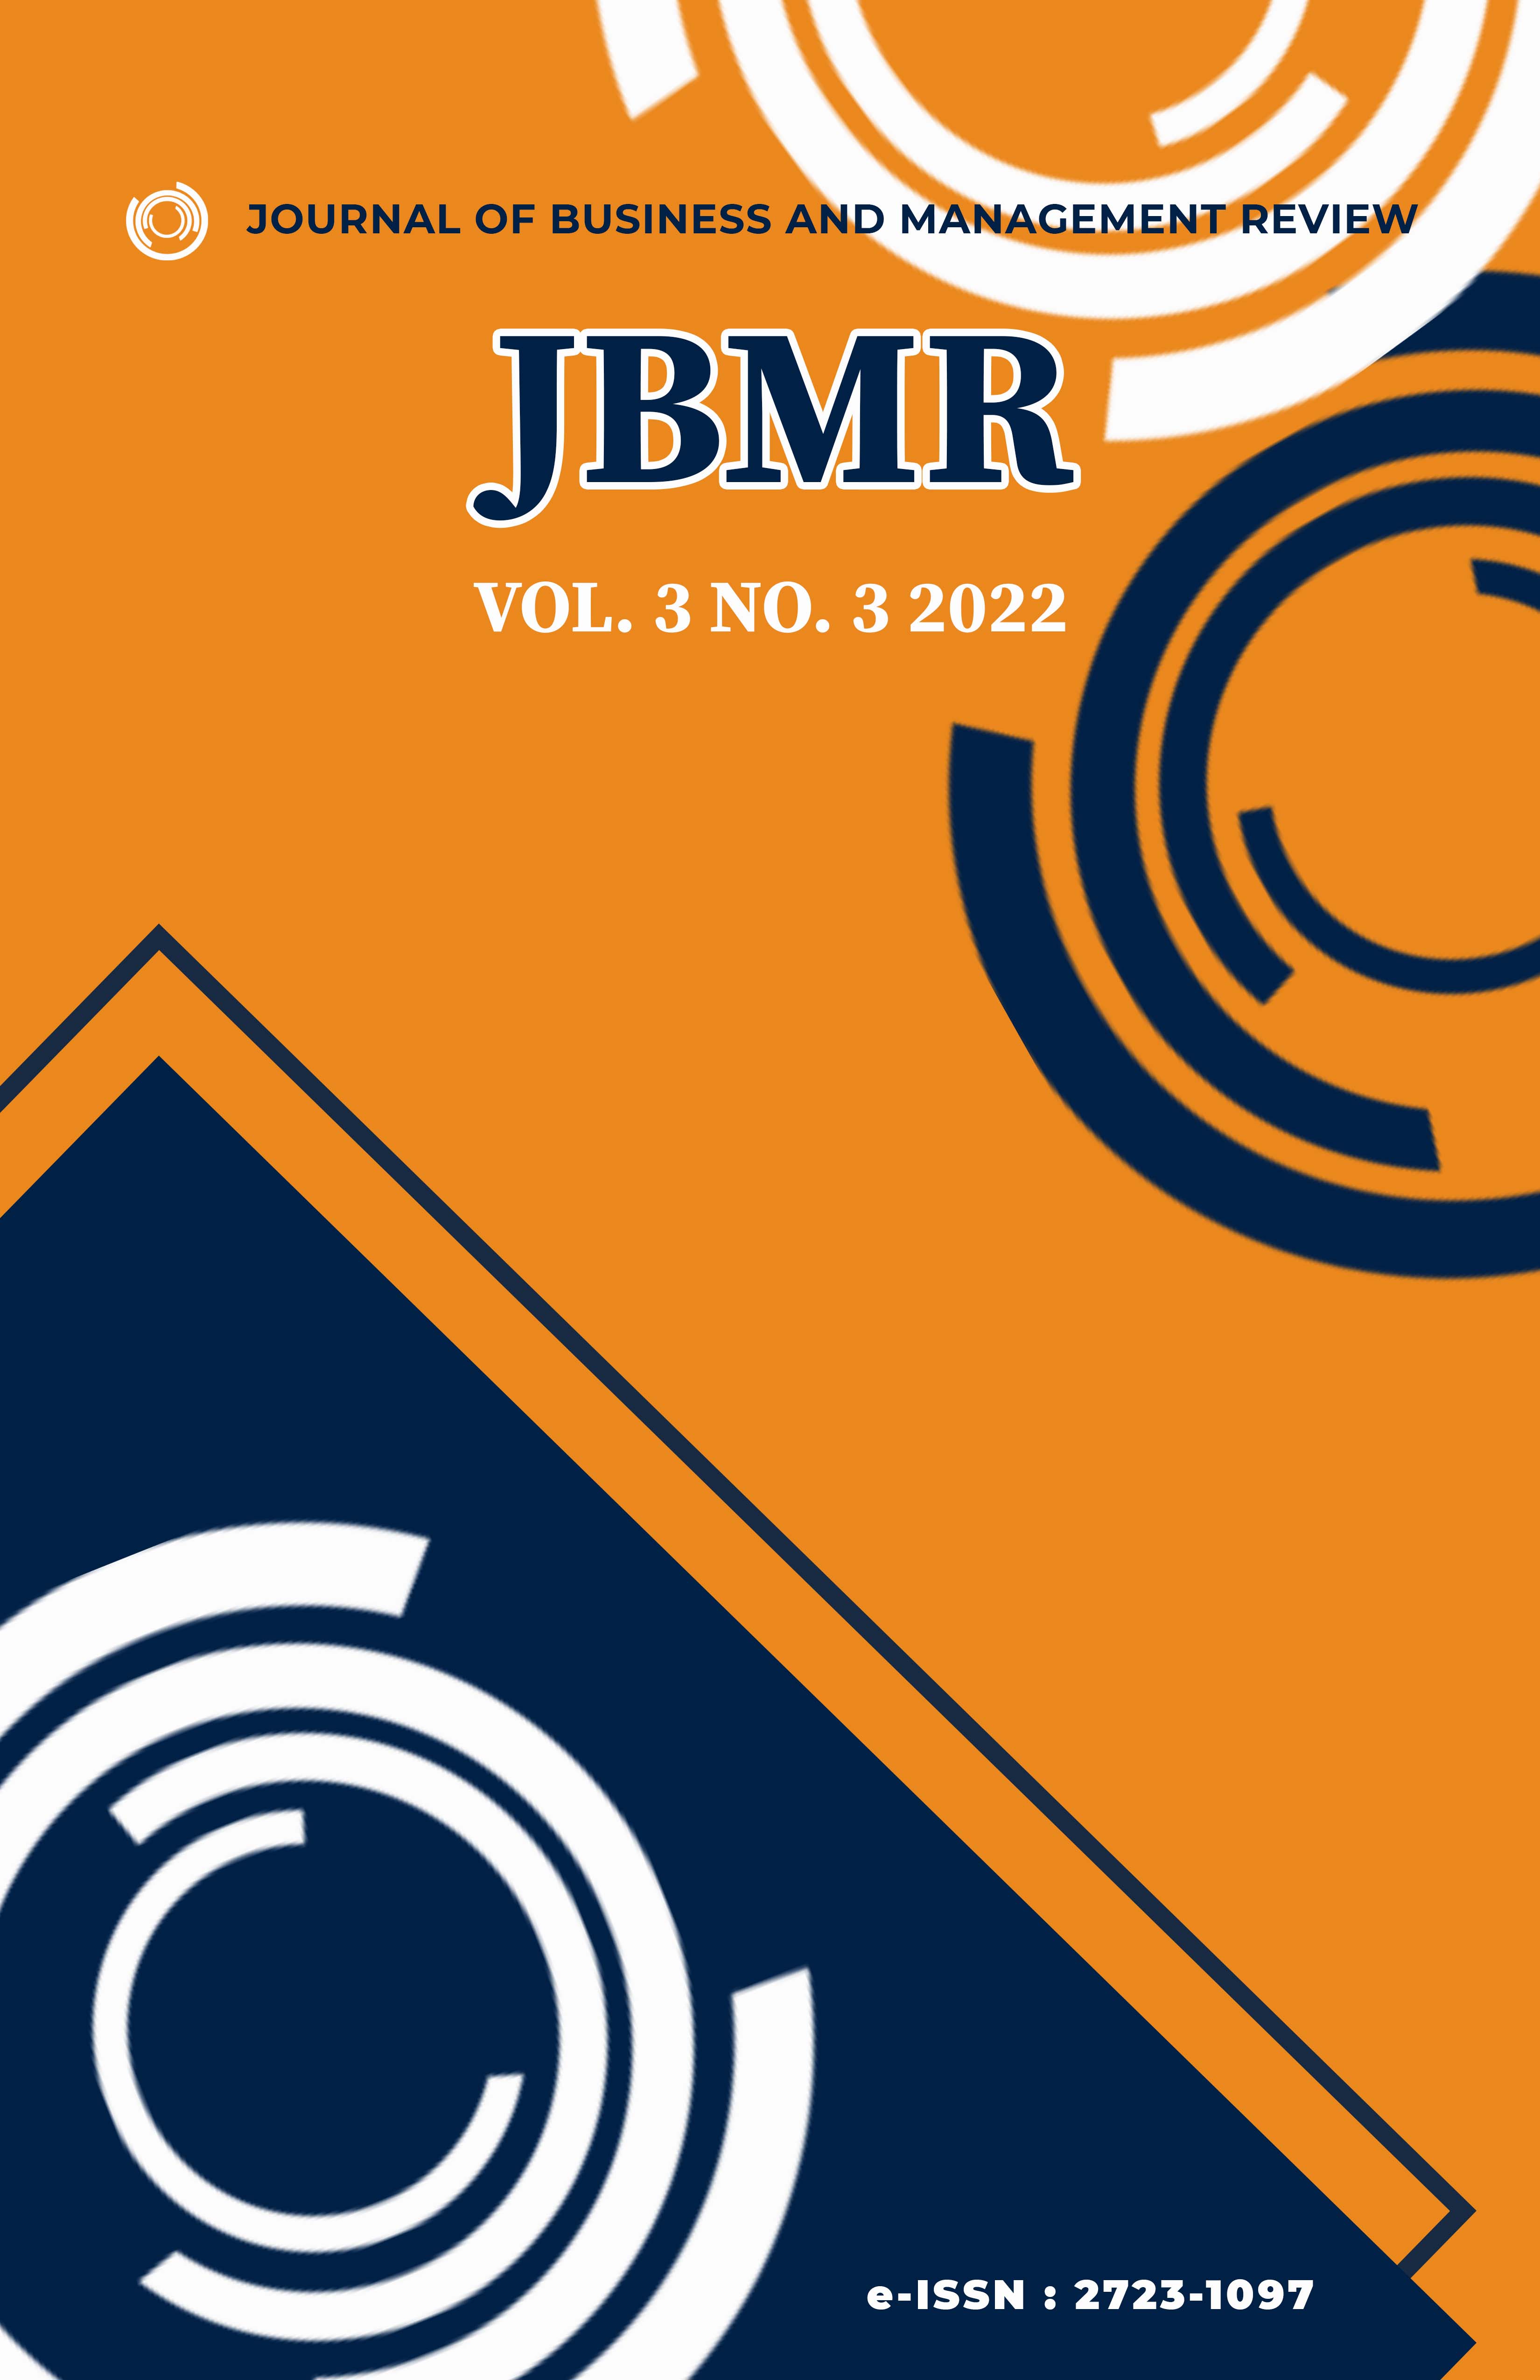 #JBMR Vol. 3 No. 3 2022